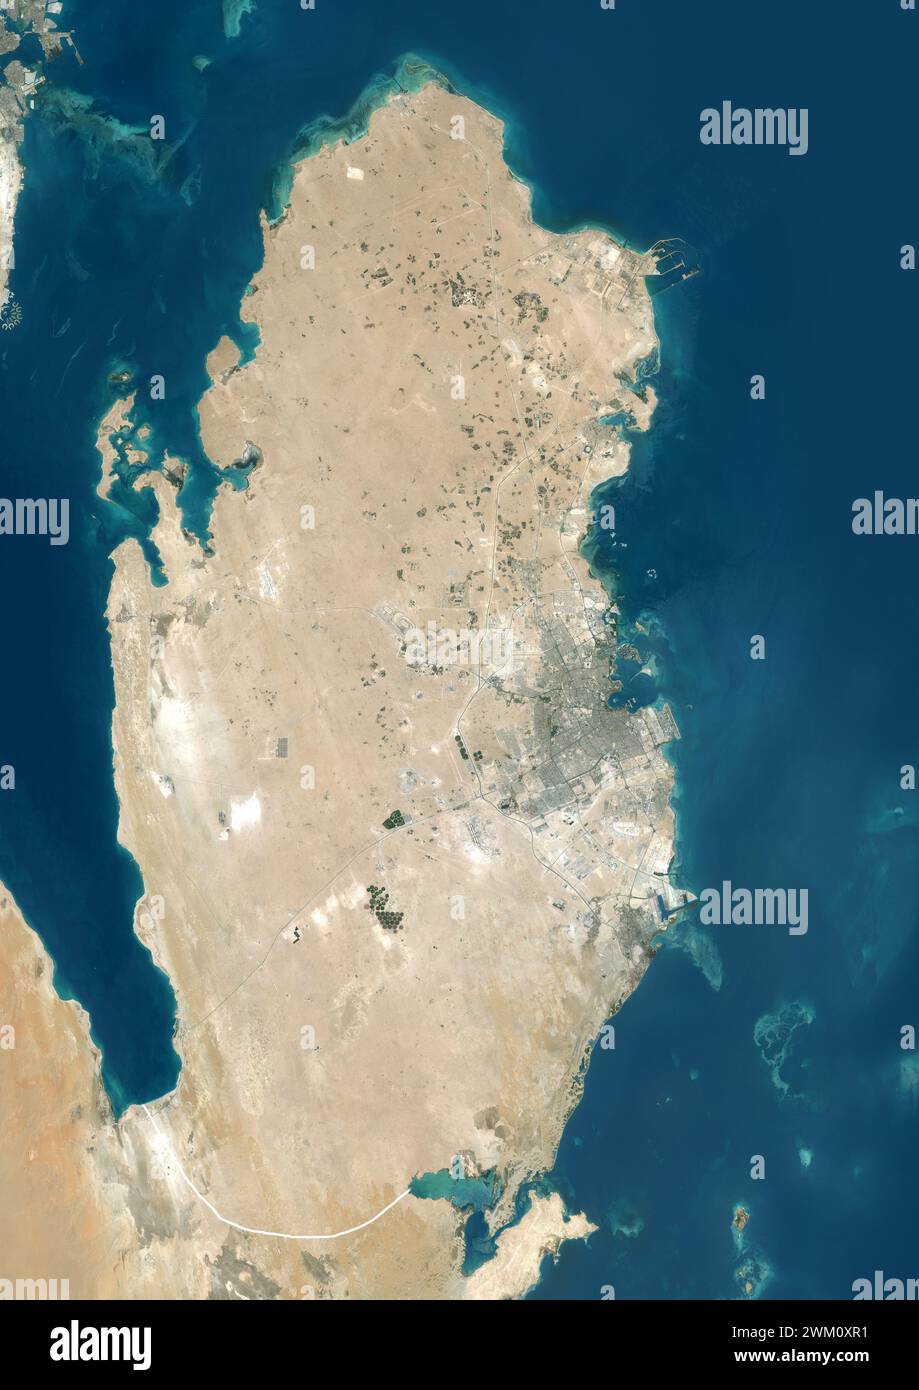 Immagine satellitare a colori del Qatar e dei paesi vicini, con confini. Foto Stock